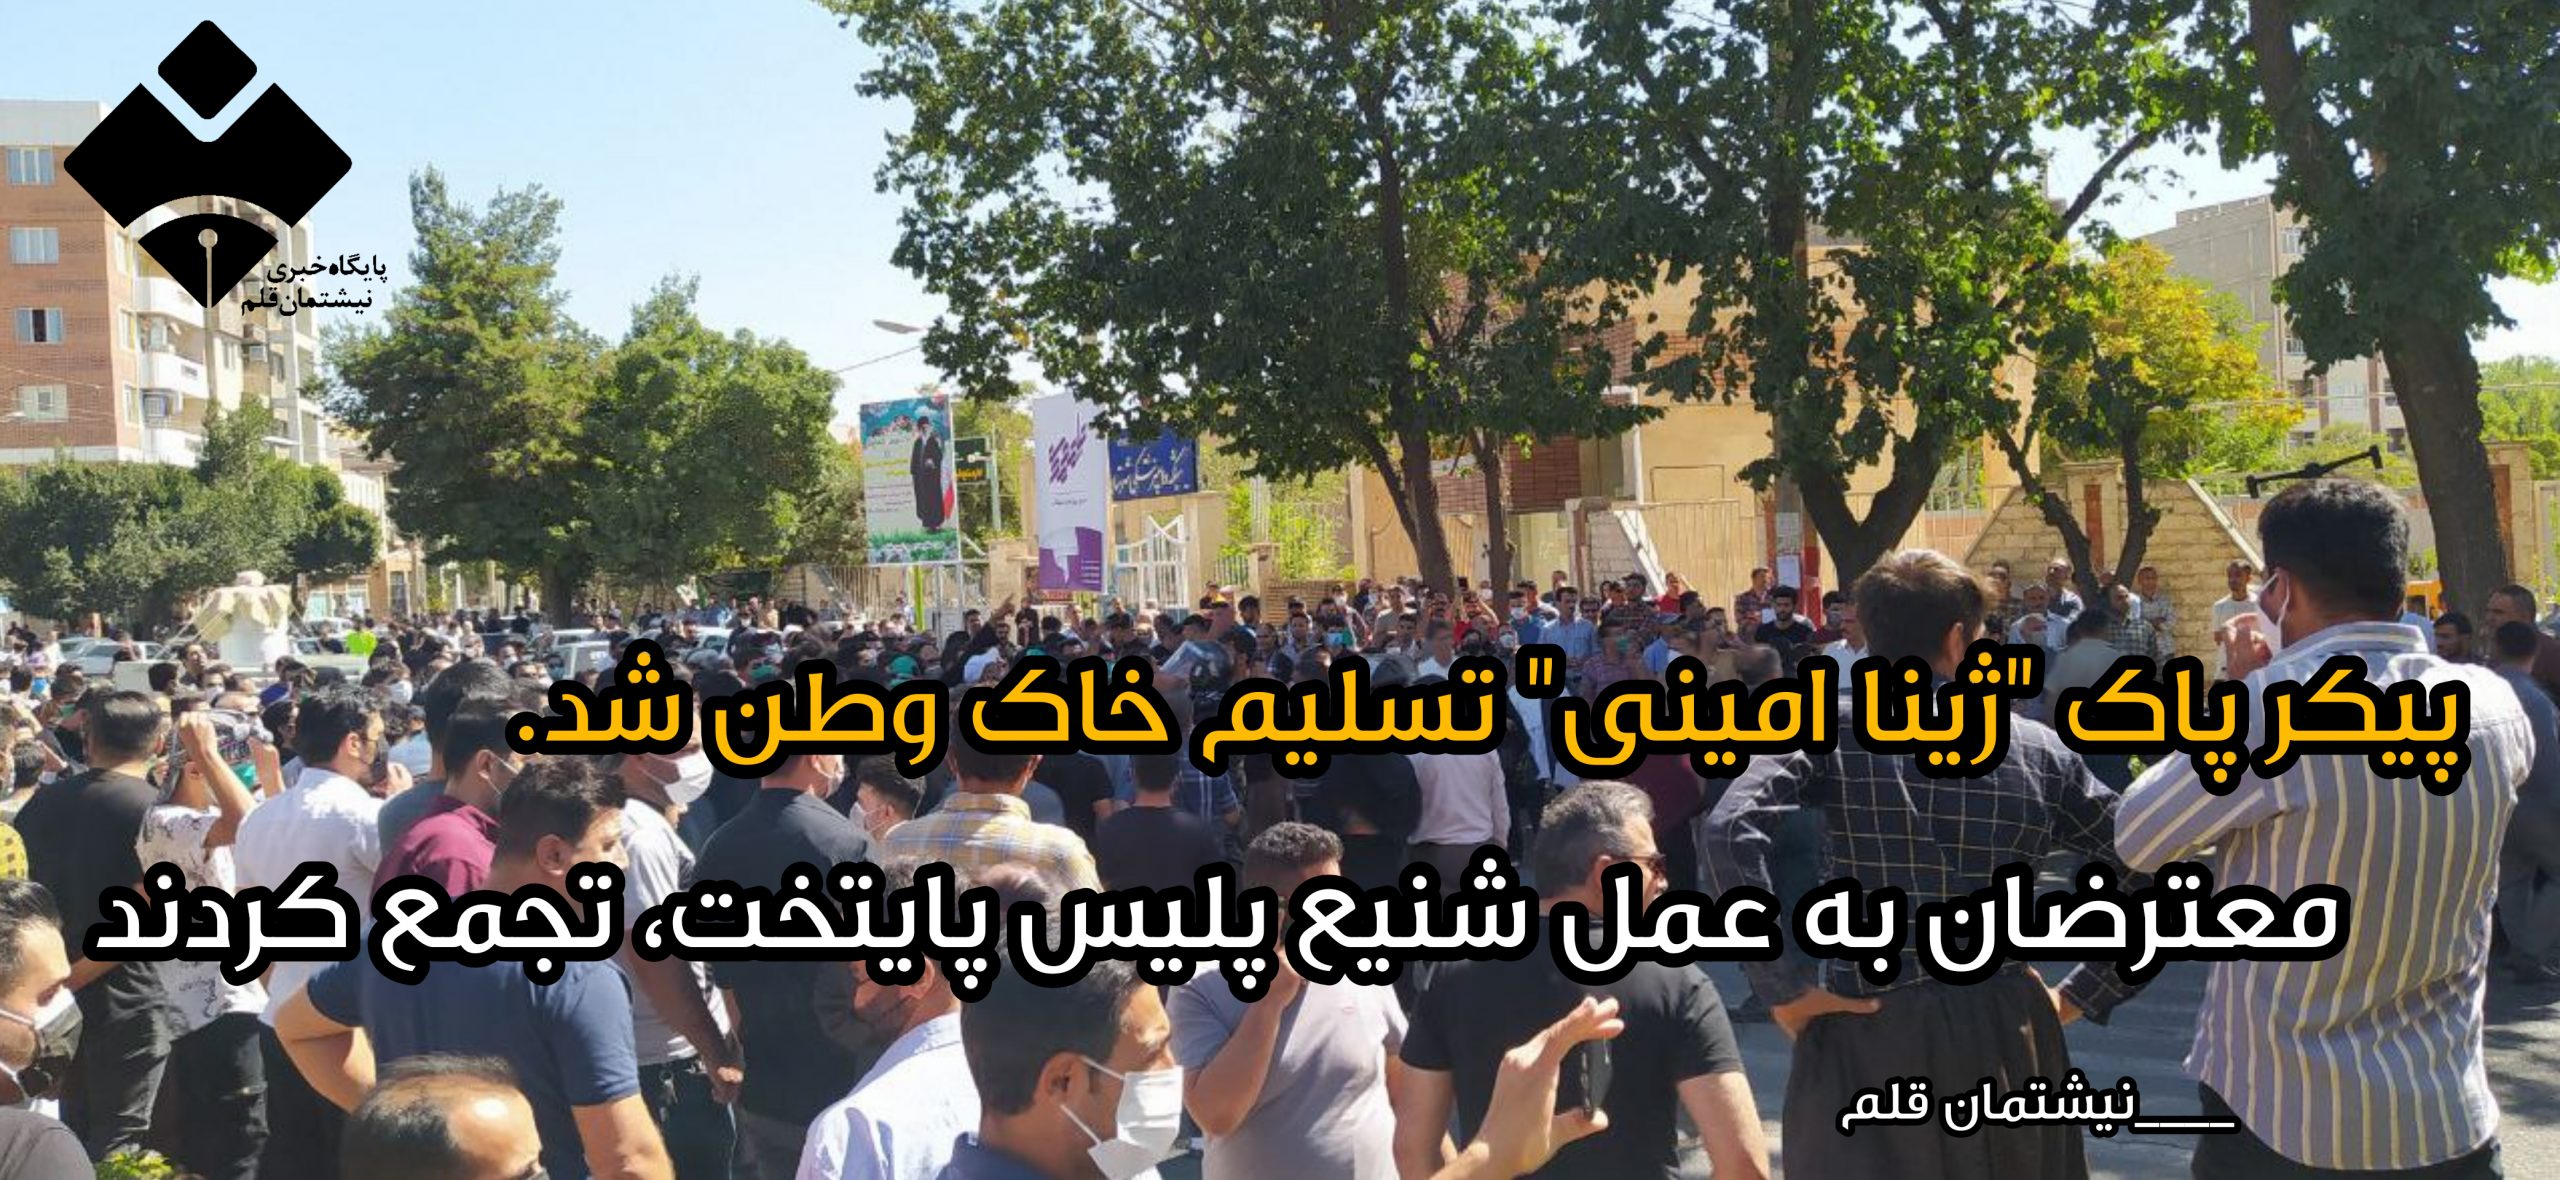 پیکر پاک "ژینا امینی" تسلیم خاک وطن شد/ عزاداران به عمل شنیع پلیس پایتخت اعتراض کردند